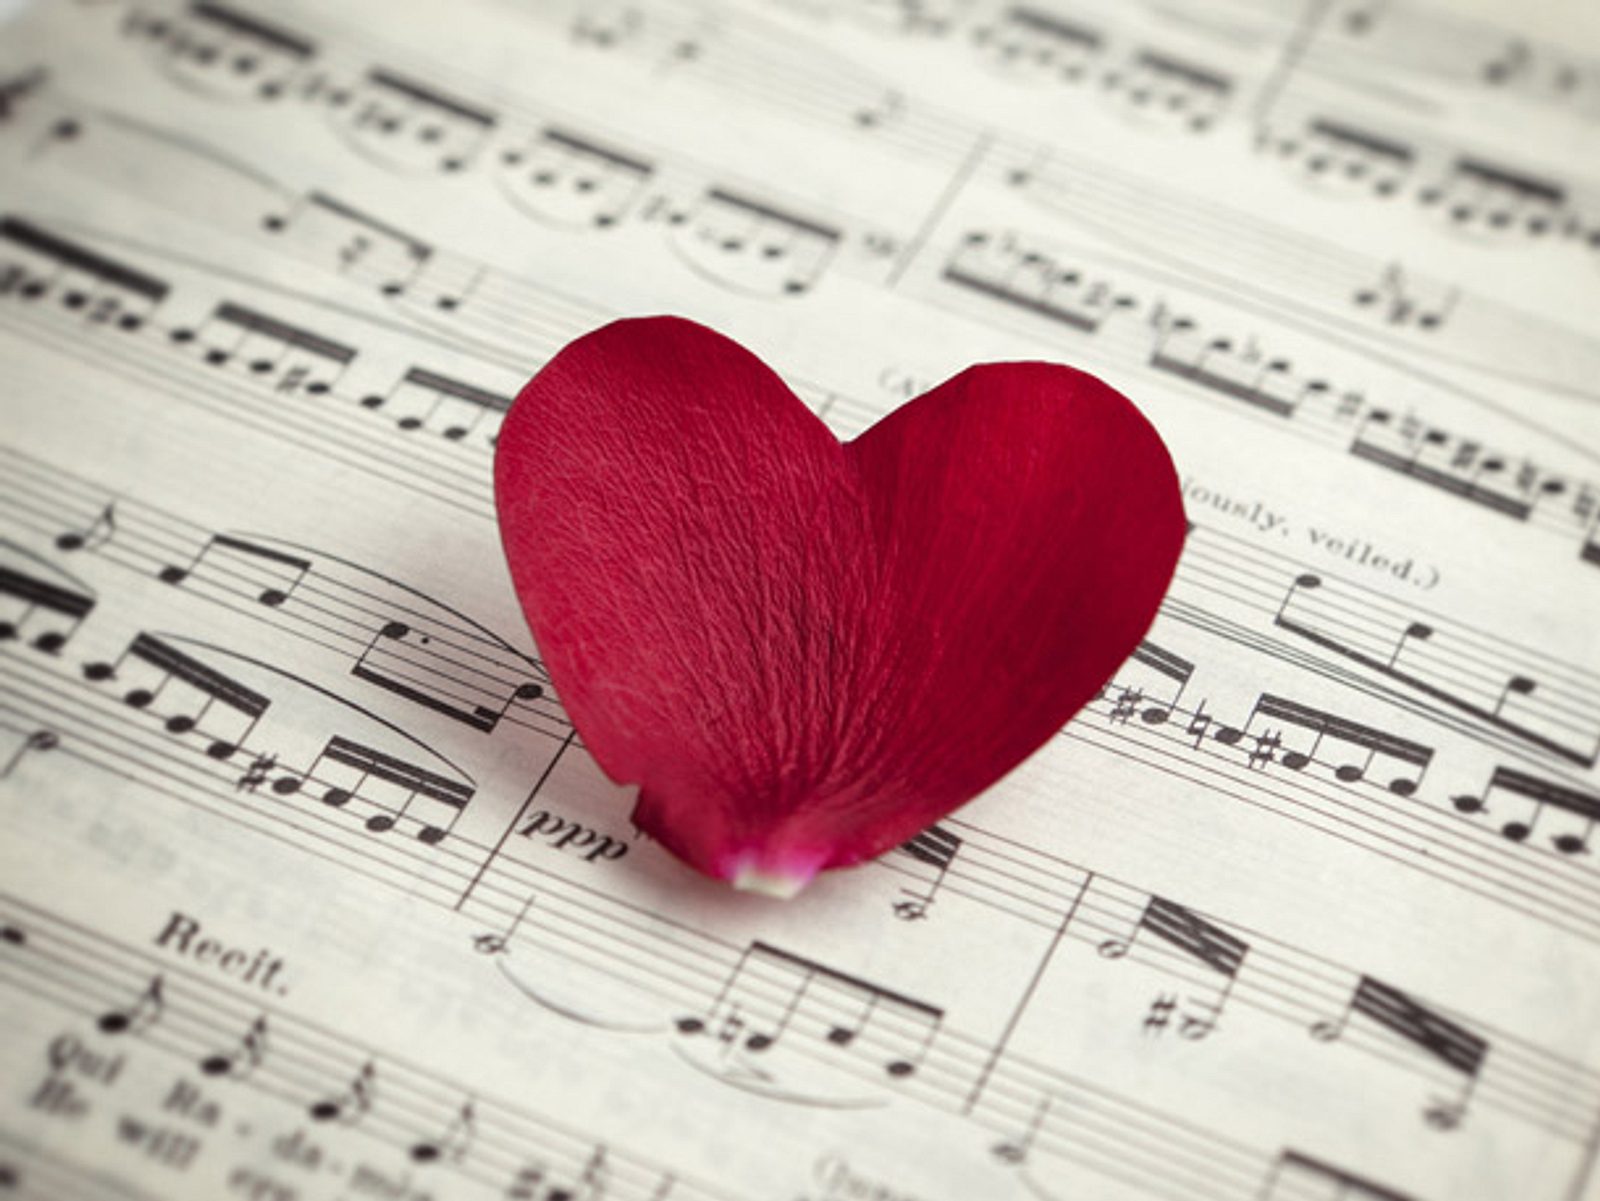 Люблю тебя любимый песню пою для. Музыка любви. Красивые картинки про любовь. Романтично и музыкально. Композиция "это любовь".